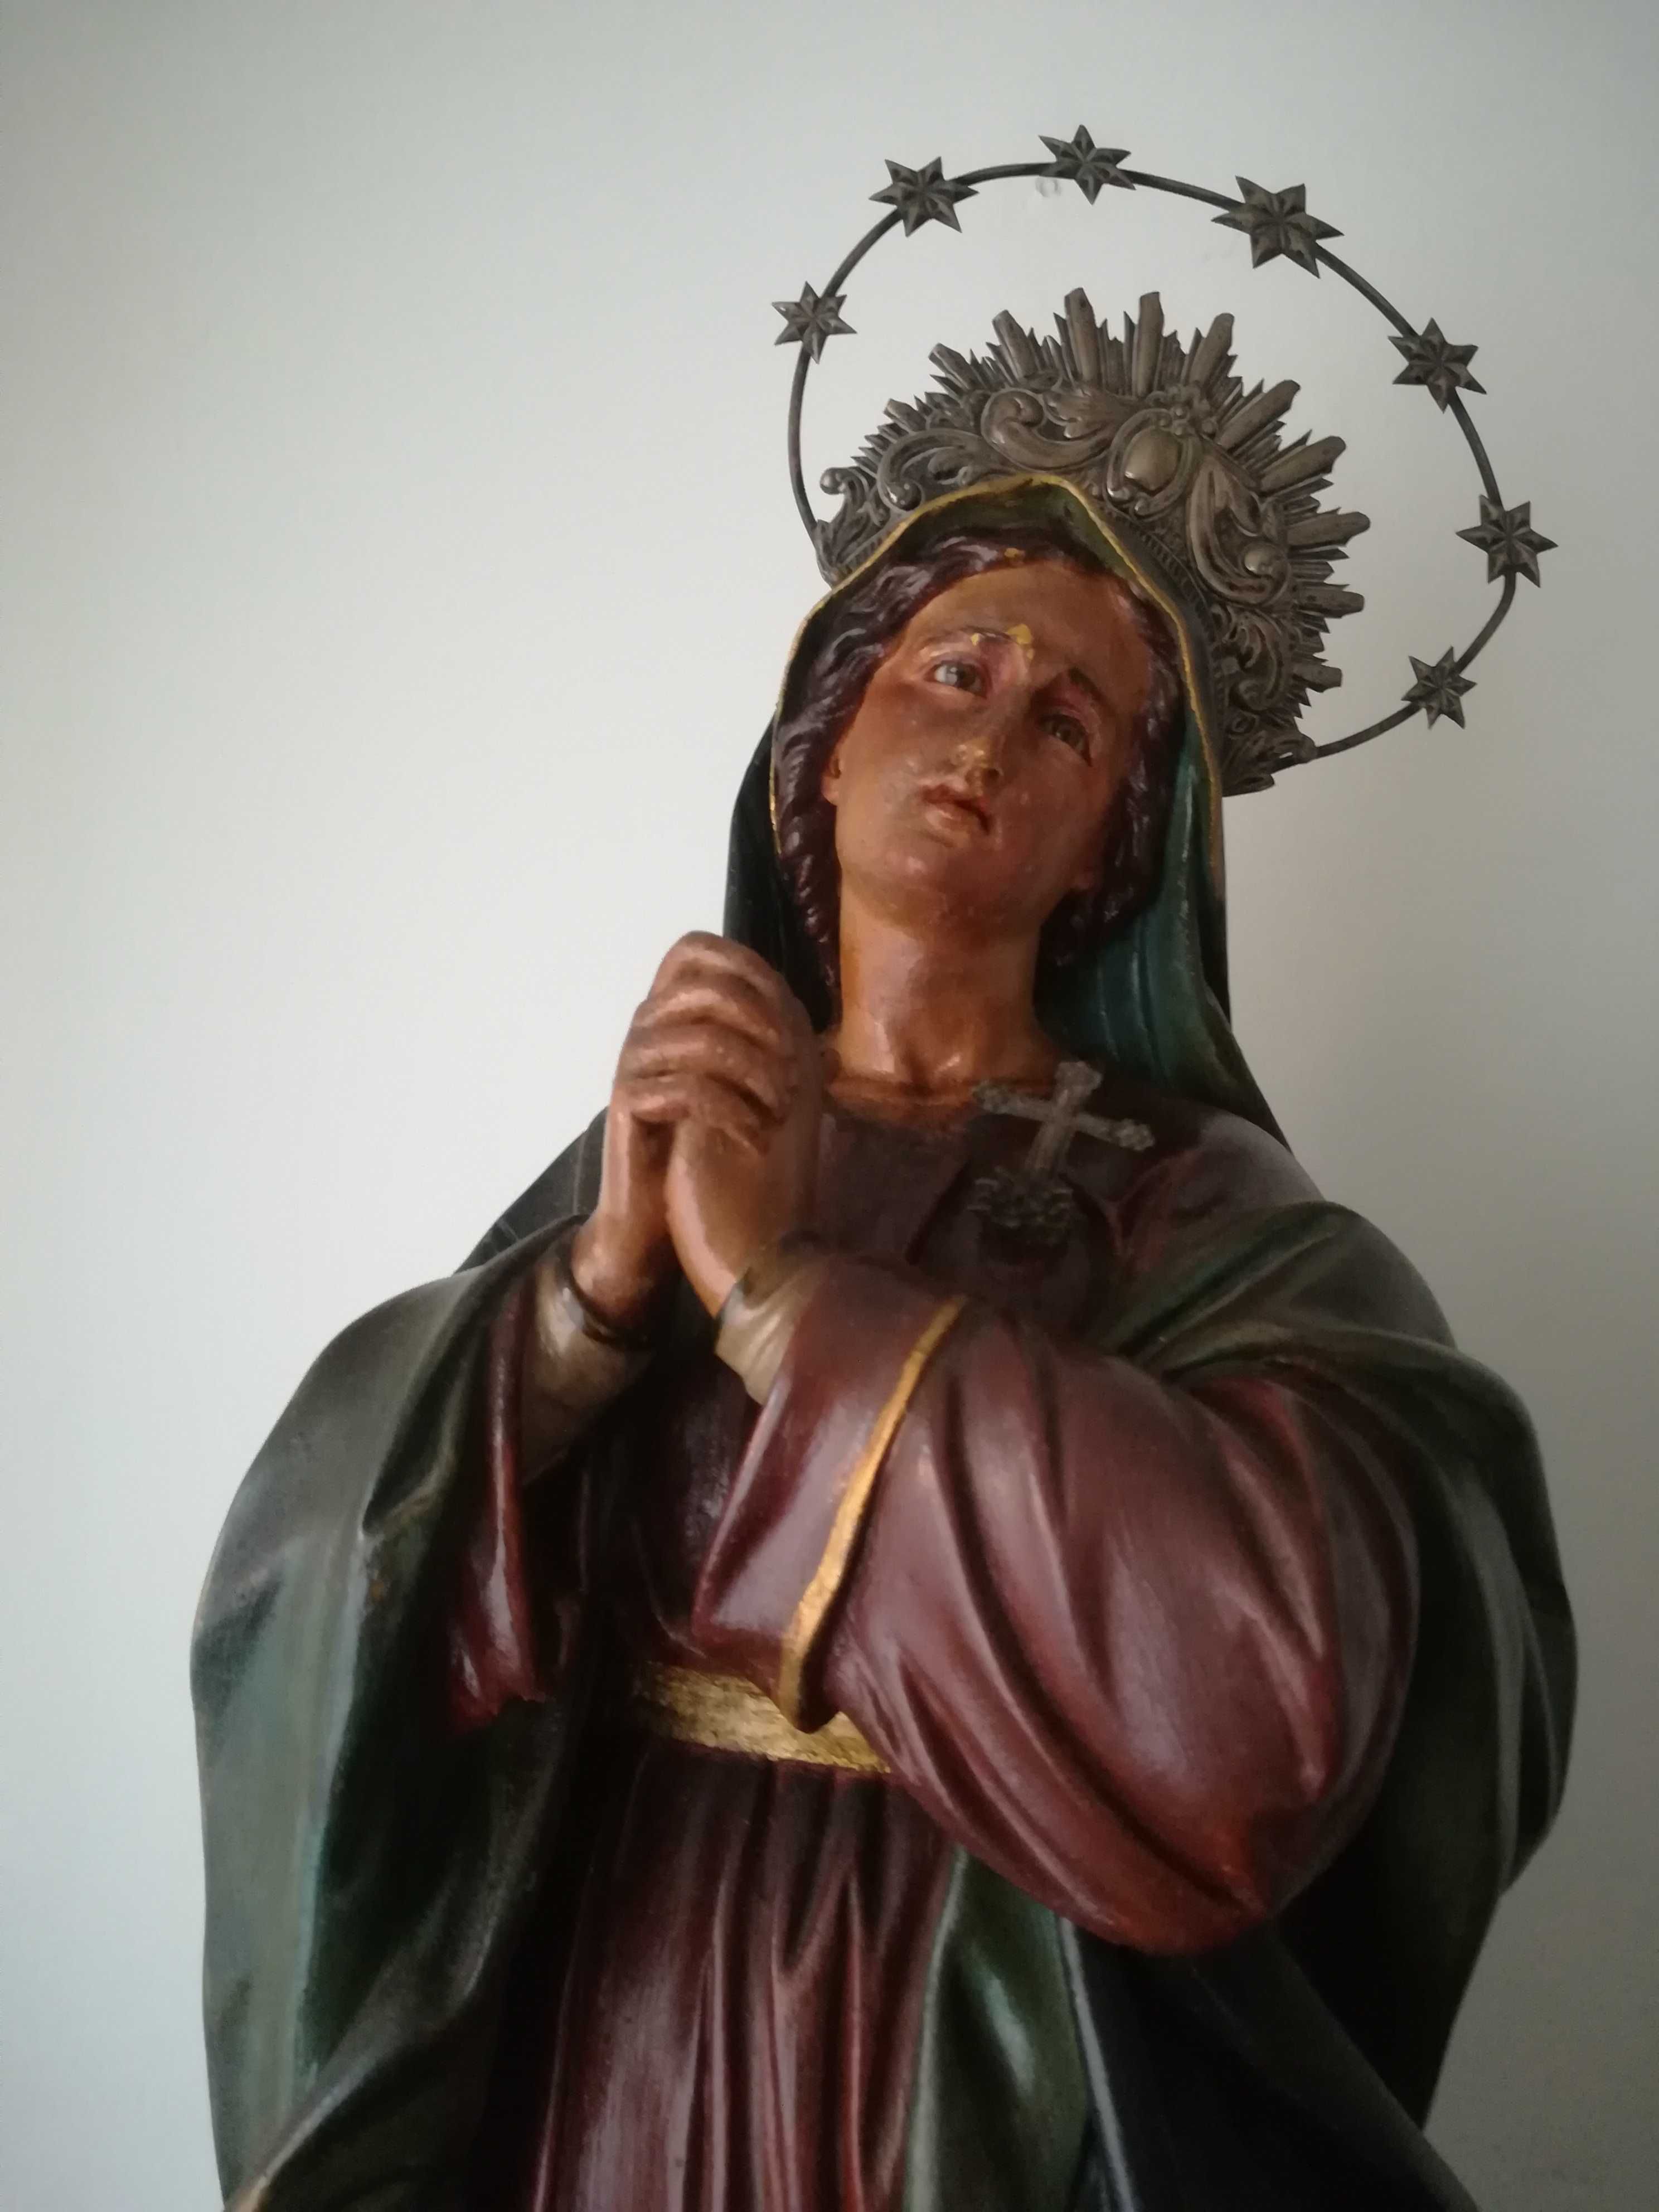 Escultura de Nossa Senhora das Dores arte sacra(baixa de preço)